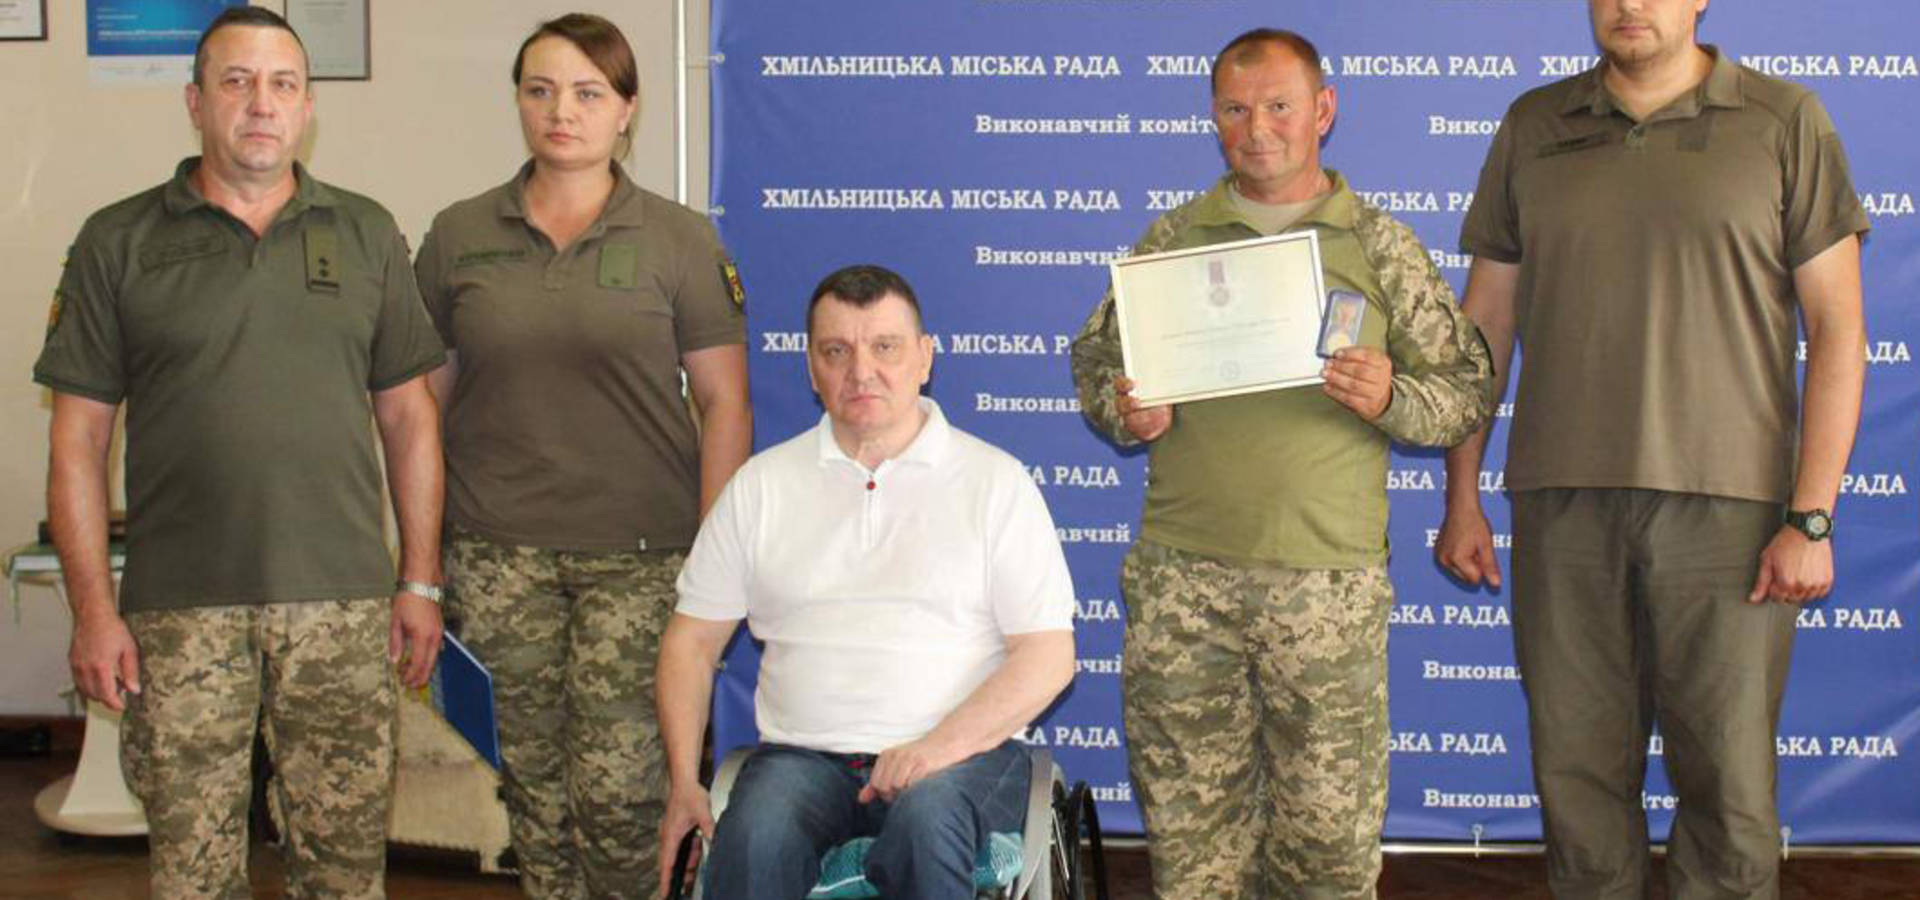 У Хмільнику, молодшому сержанту з Сербанівки Олександру Добридню, вручили відзнаку за "Оборону України"